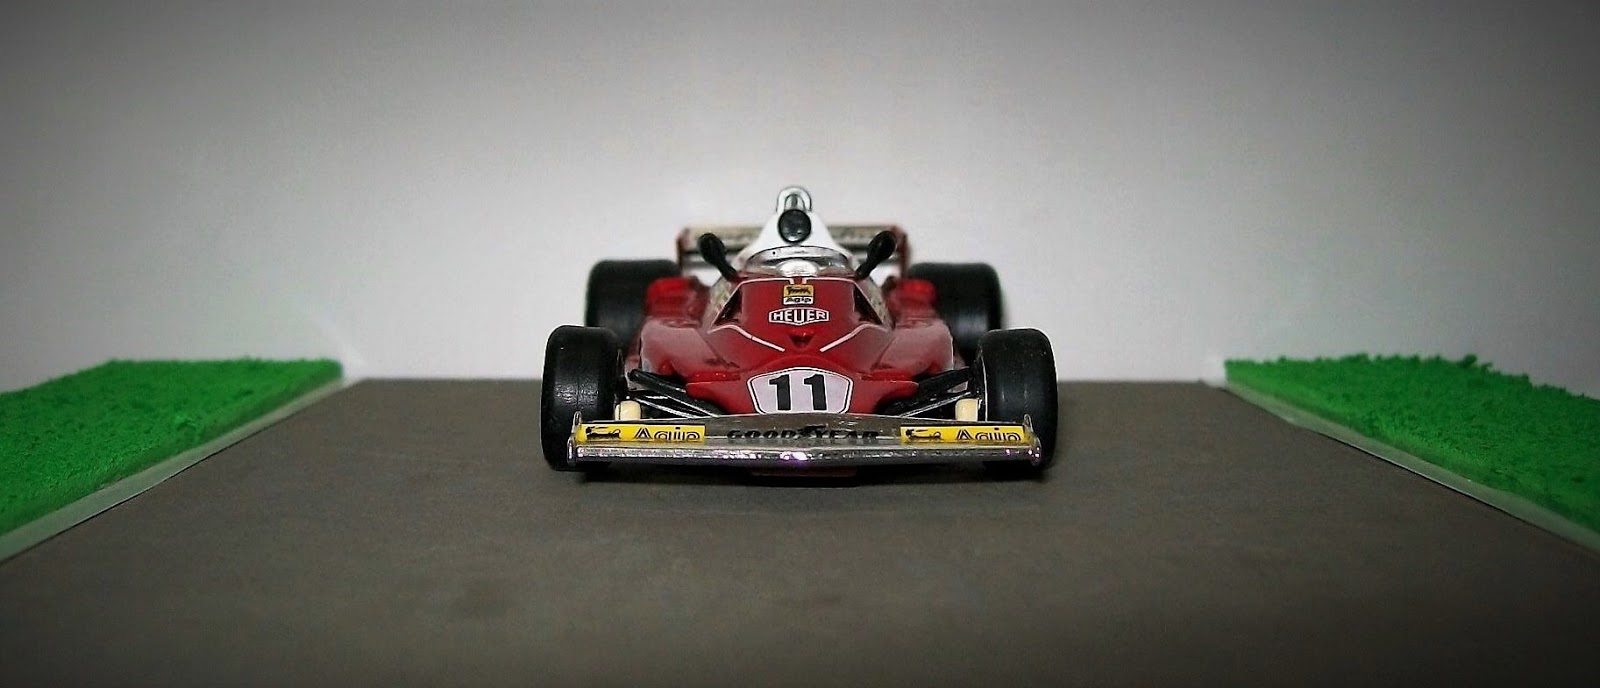 Nikki Lauda Ferrari 312 T2-F1 coche 1977 Modelo Coleccionable-escala 1:43 